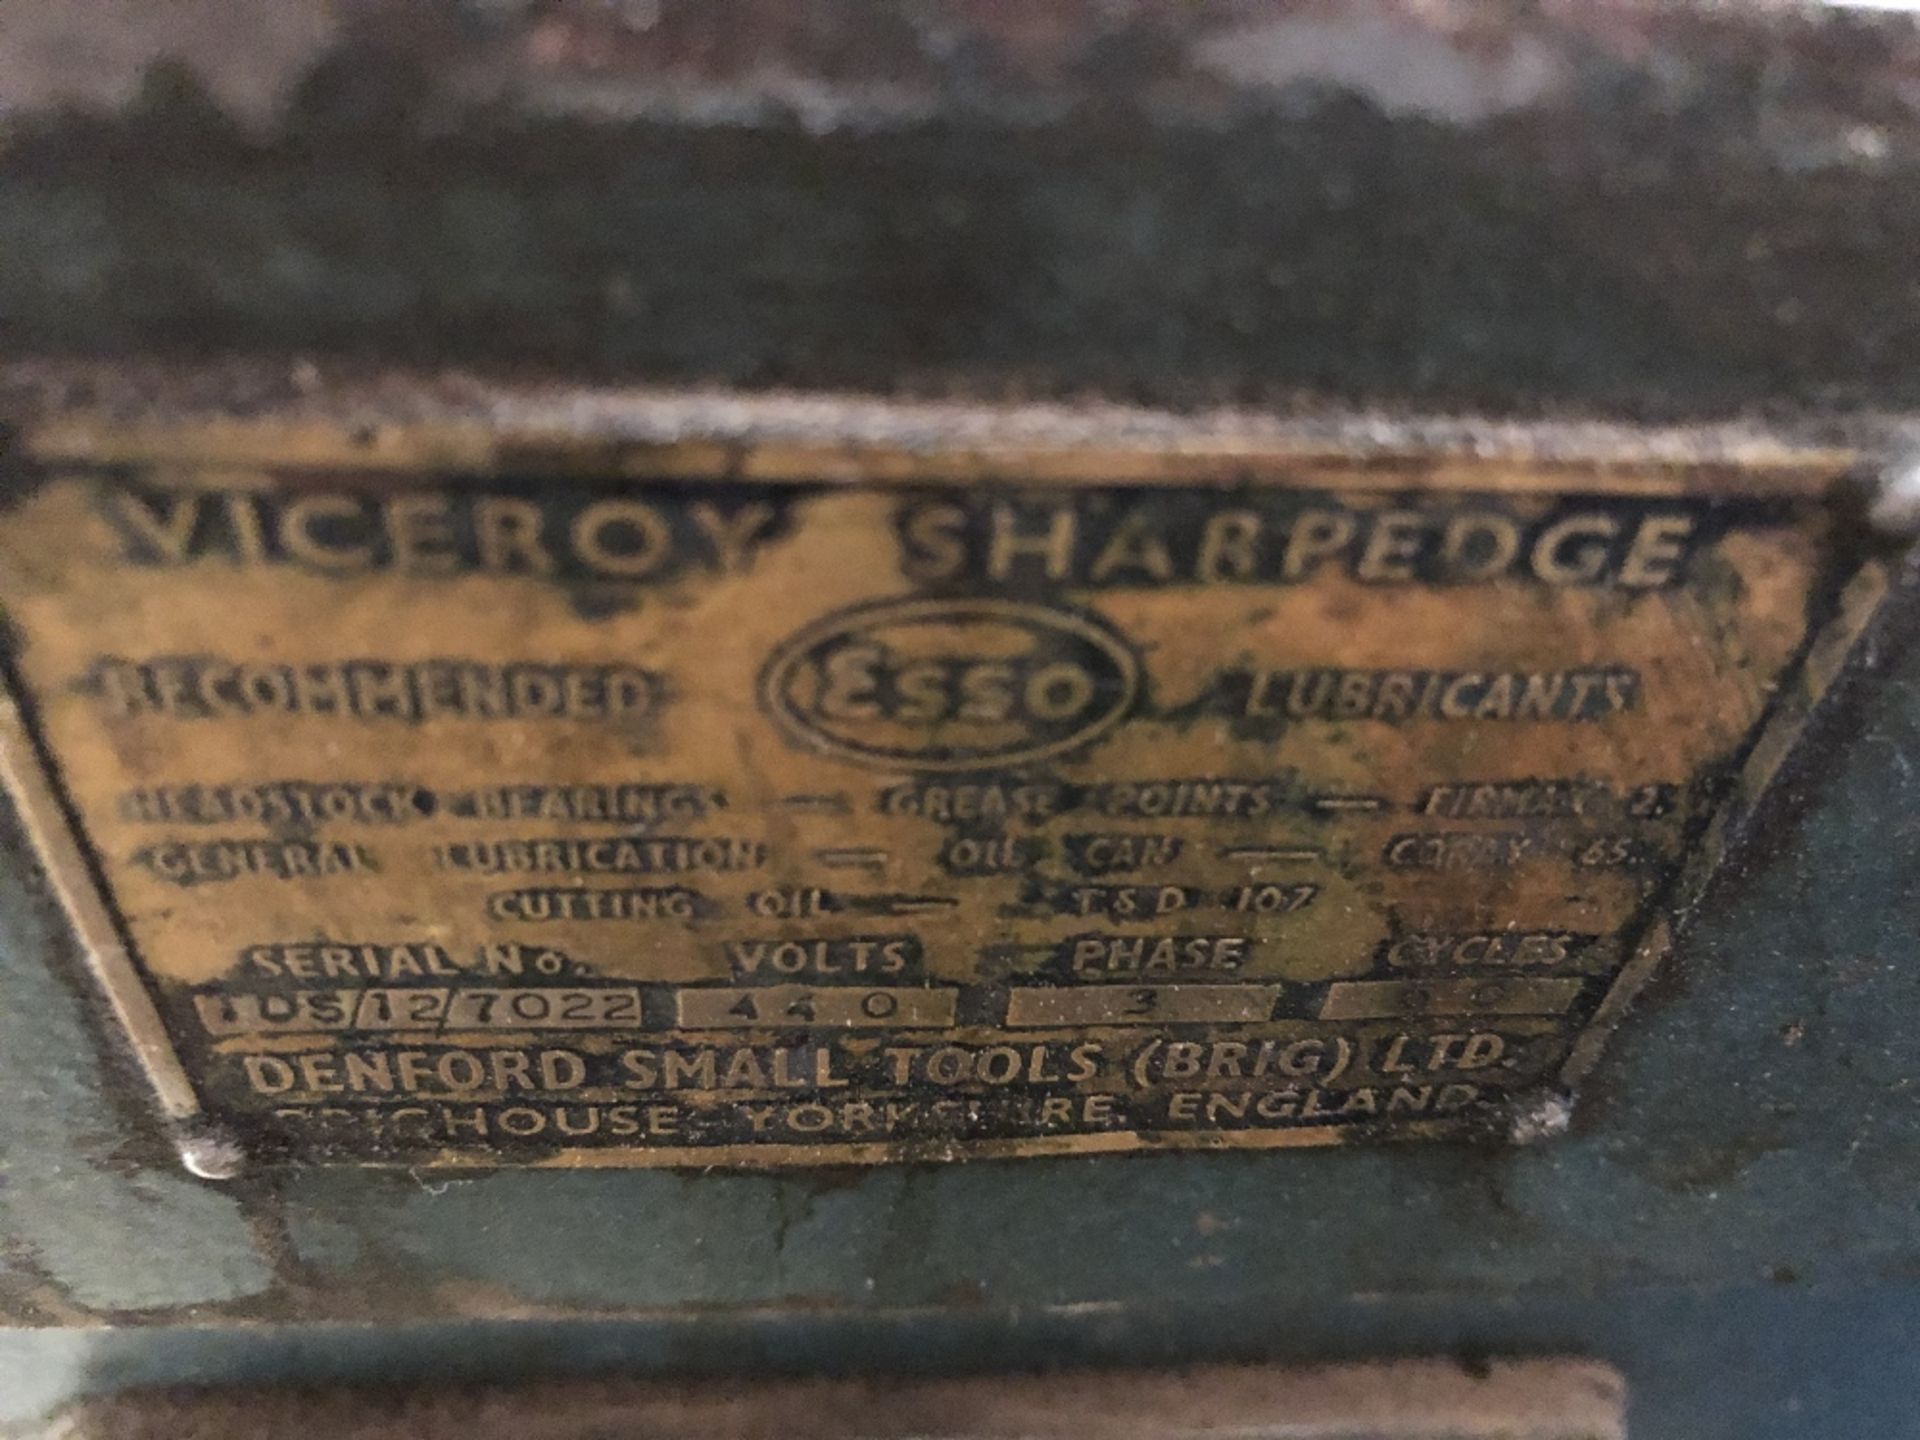 Viceroy Sharpedge Tool Grinder / Sharpener - Image 4 of 4